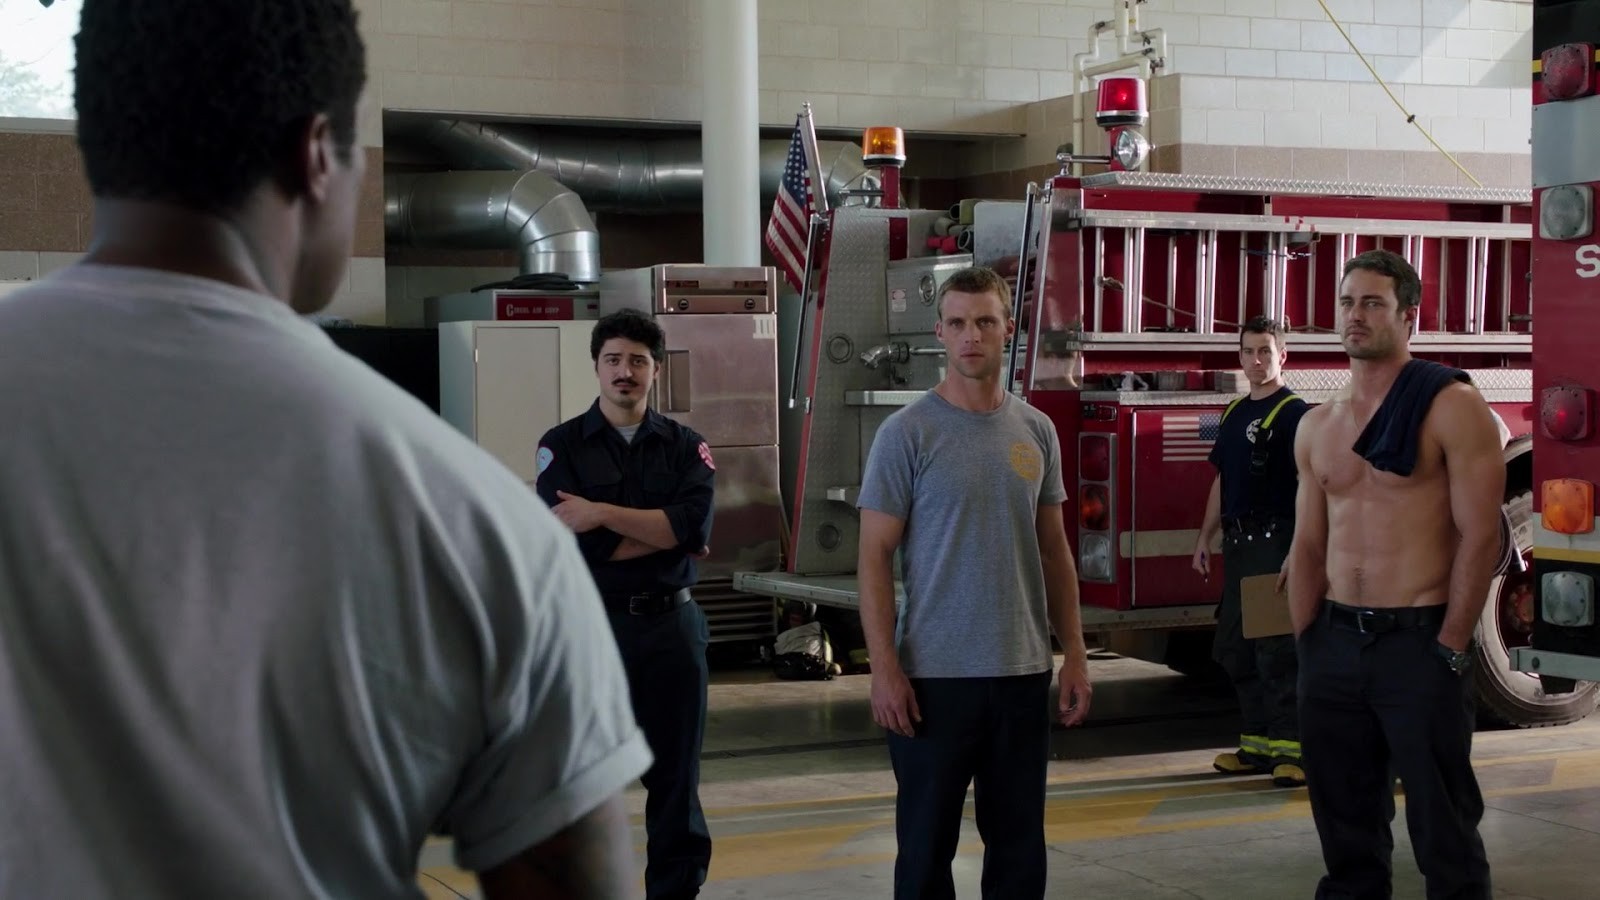 Taylor Kinney in "Chicago Fire" (1x01, 2012) - Nudi al cinema.